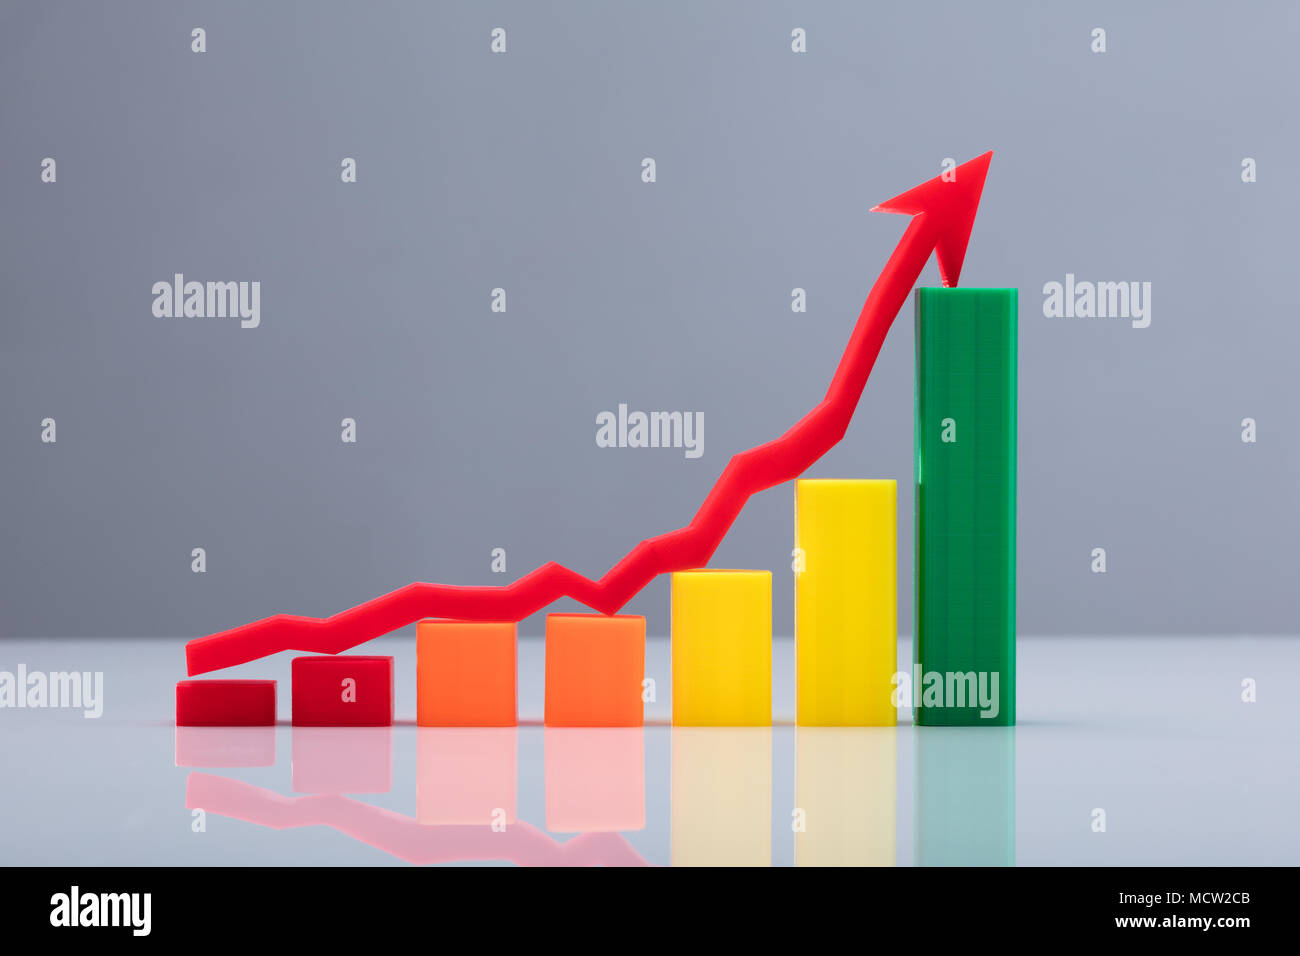 Gráfico de negocios multicolores Con Flecha Roja Cartel en sentido ascendente Foto de stock